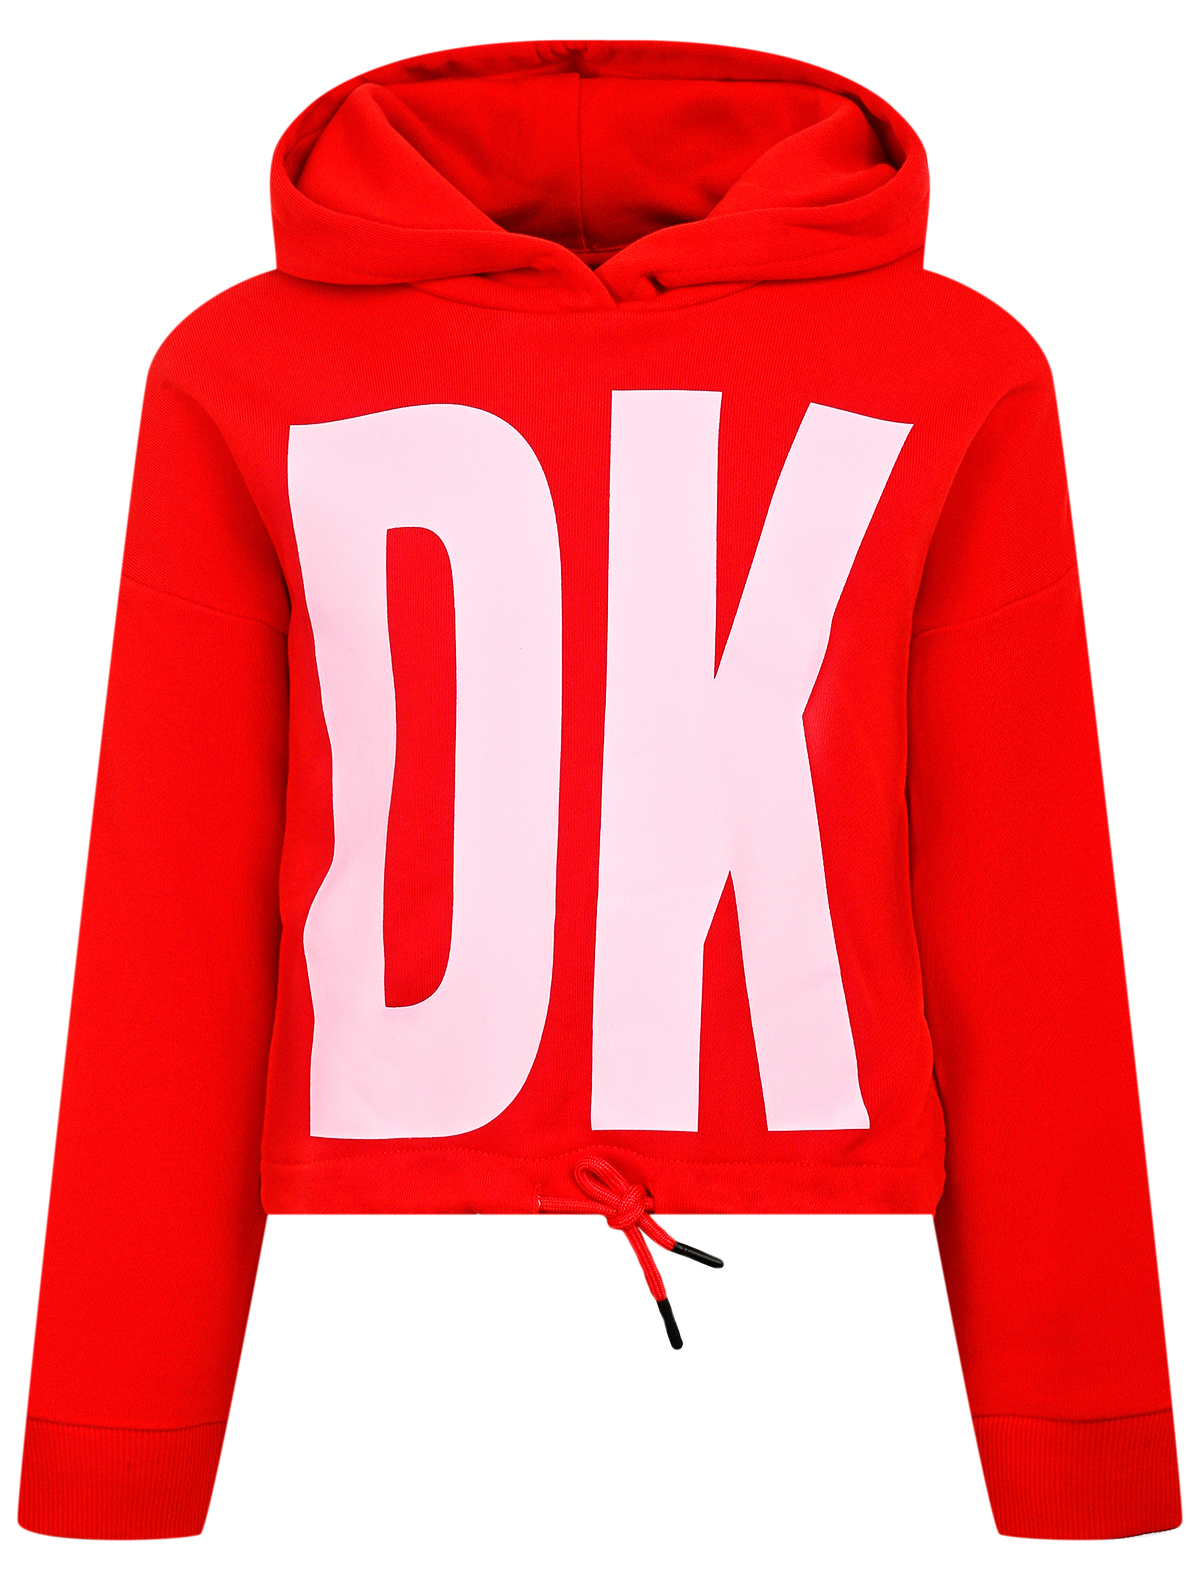 Худи DKNY красного цвета